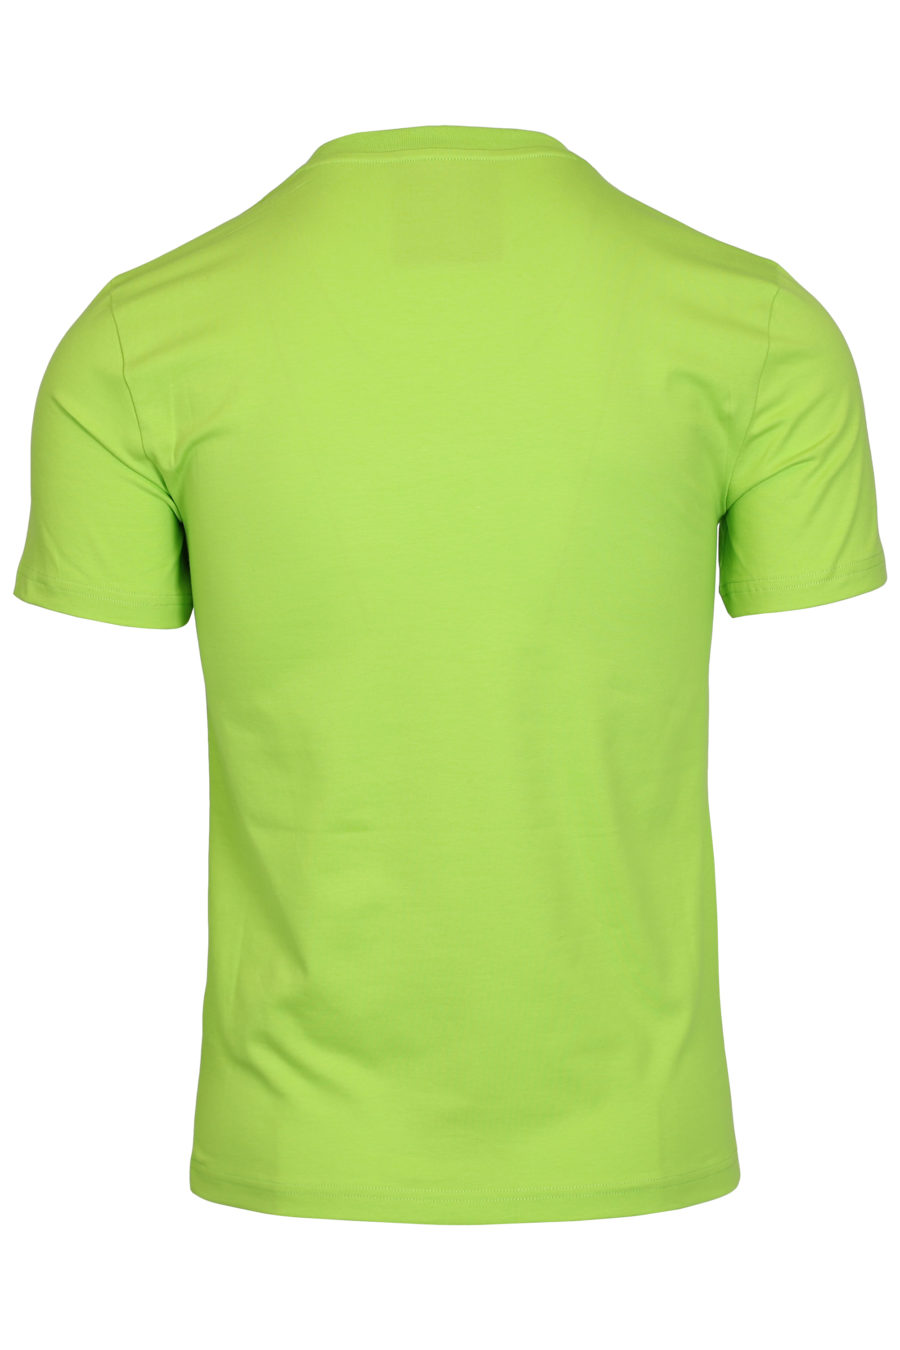 T-shirt grün großes Logo vorne - IMG 1023 1